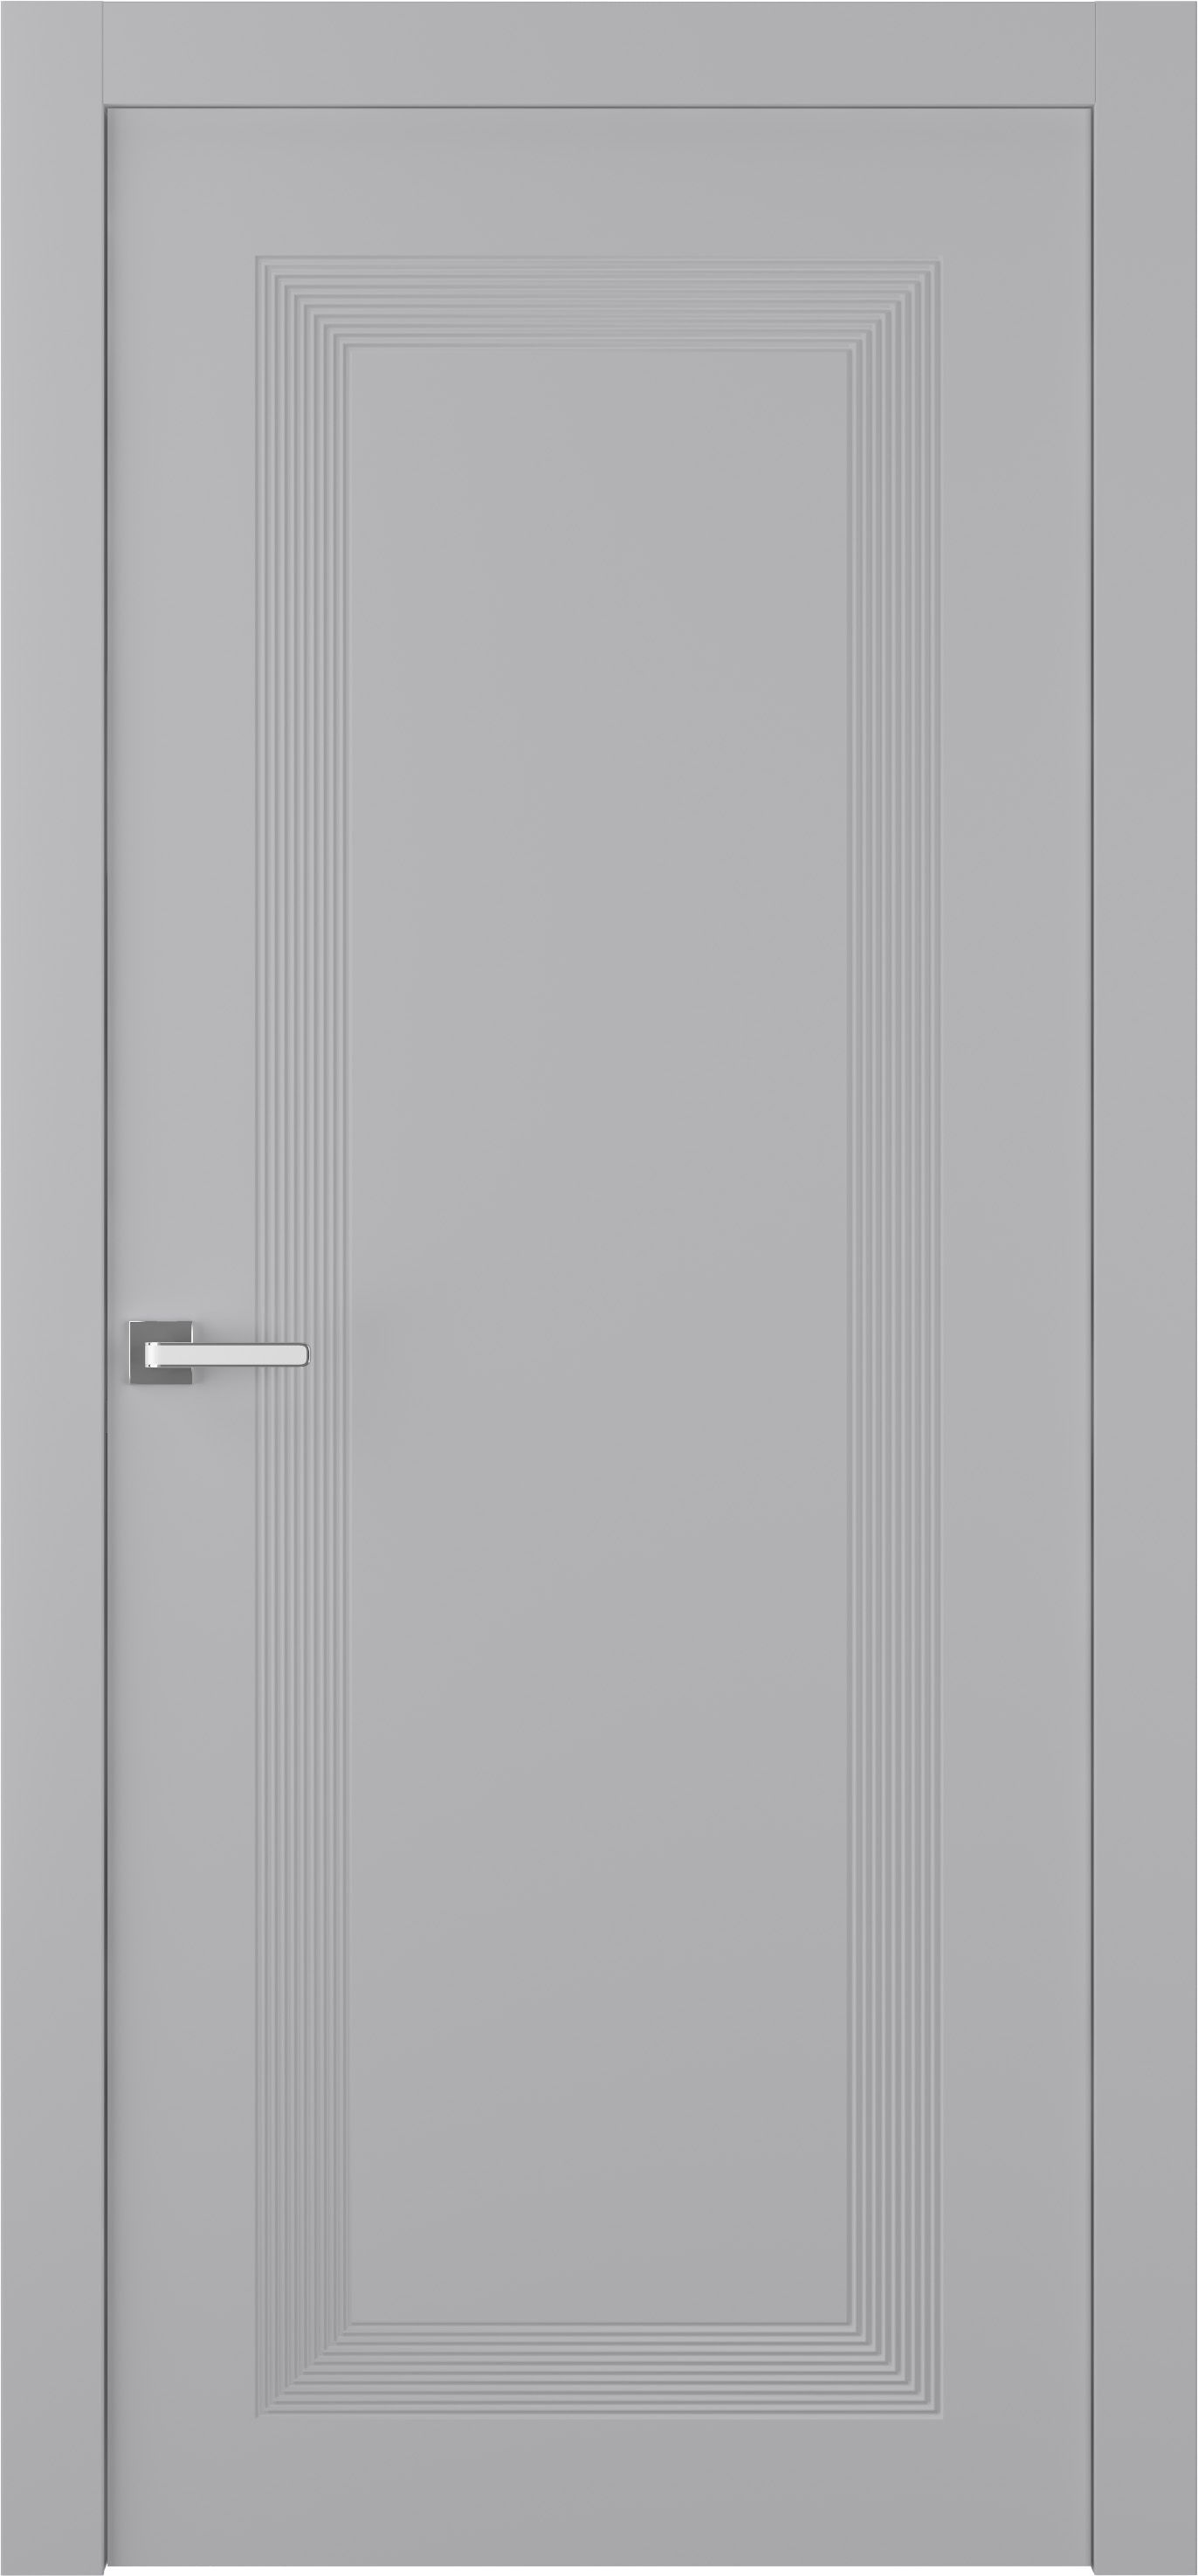 Дверное Полотно Пвдгщ "Либра 1" Эмаль Светло - Серый 2,0-0,6 Smart Core Распашная